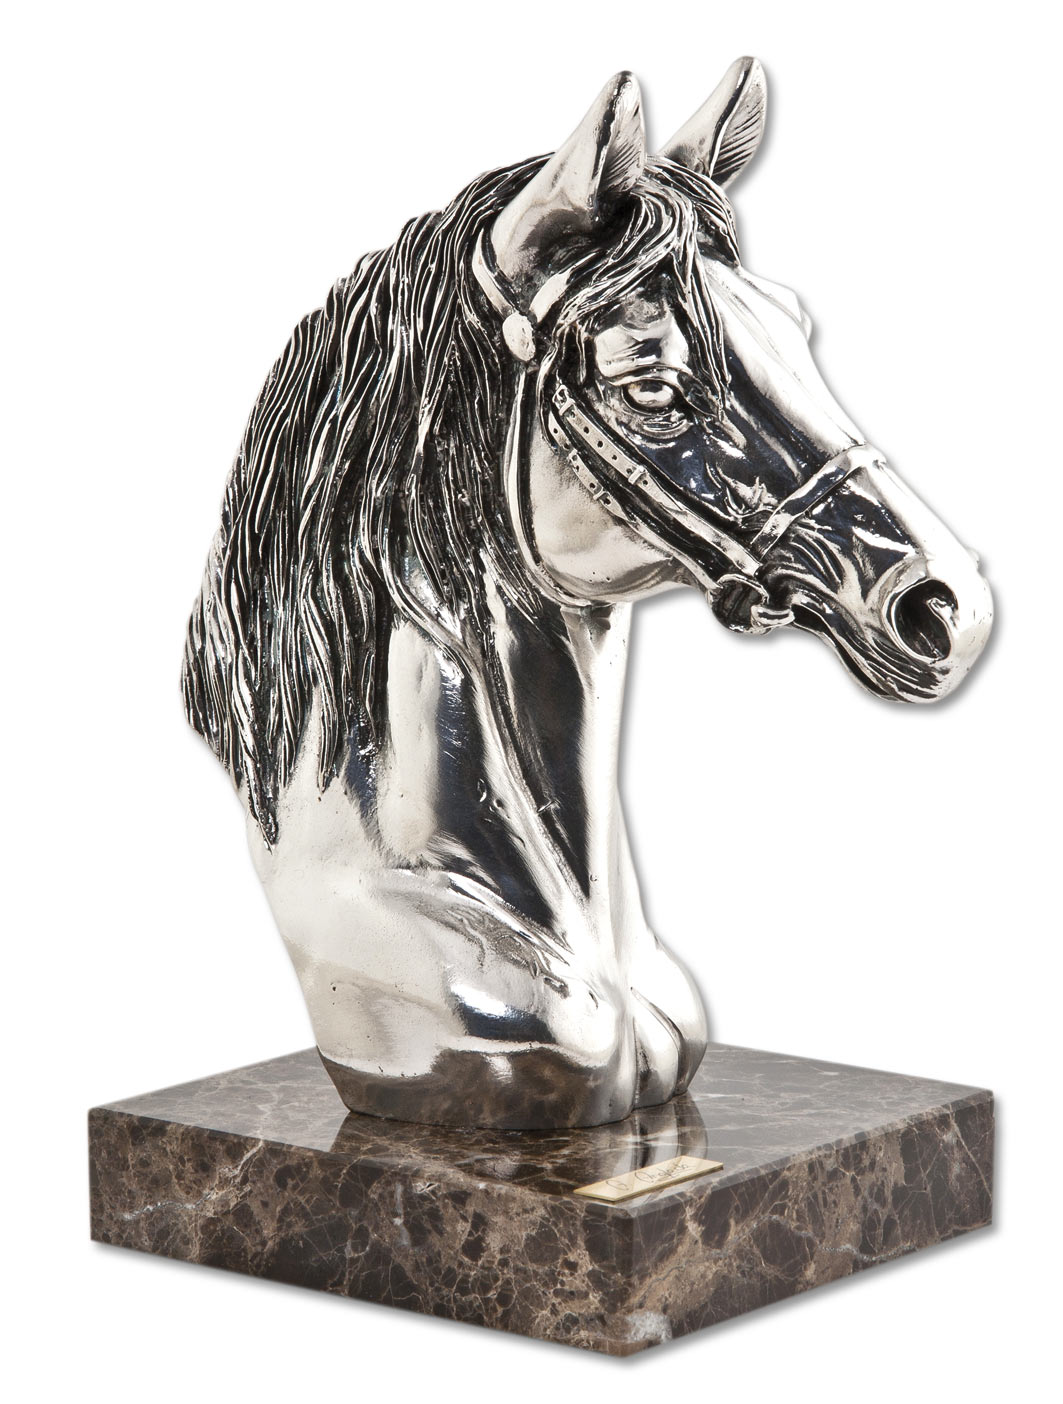 ref: 138P - Busto caballo plata - 17 x 13 x 25 cm